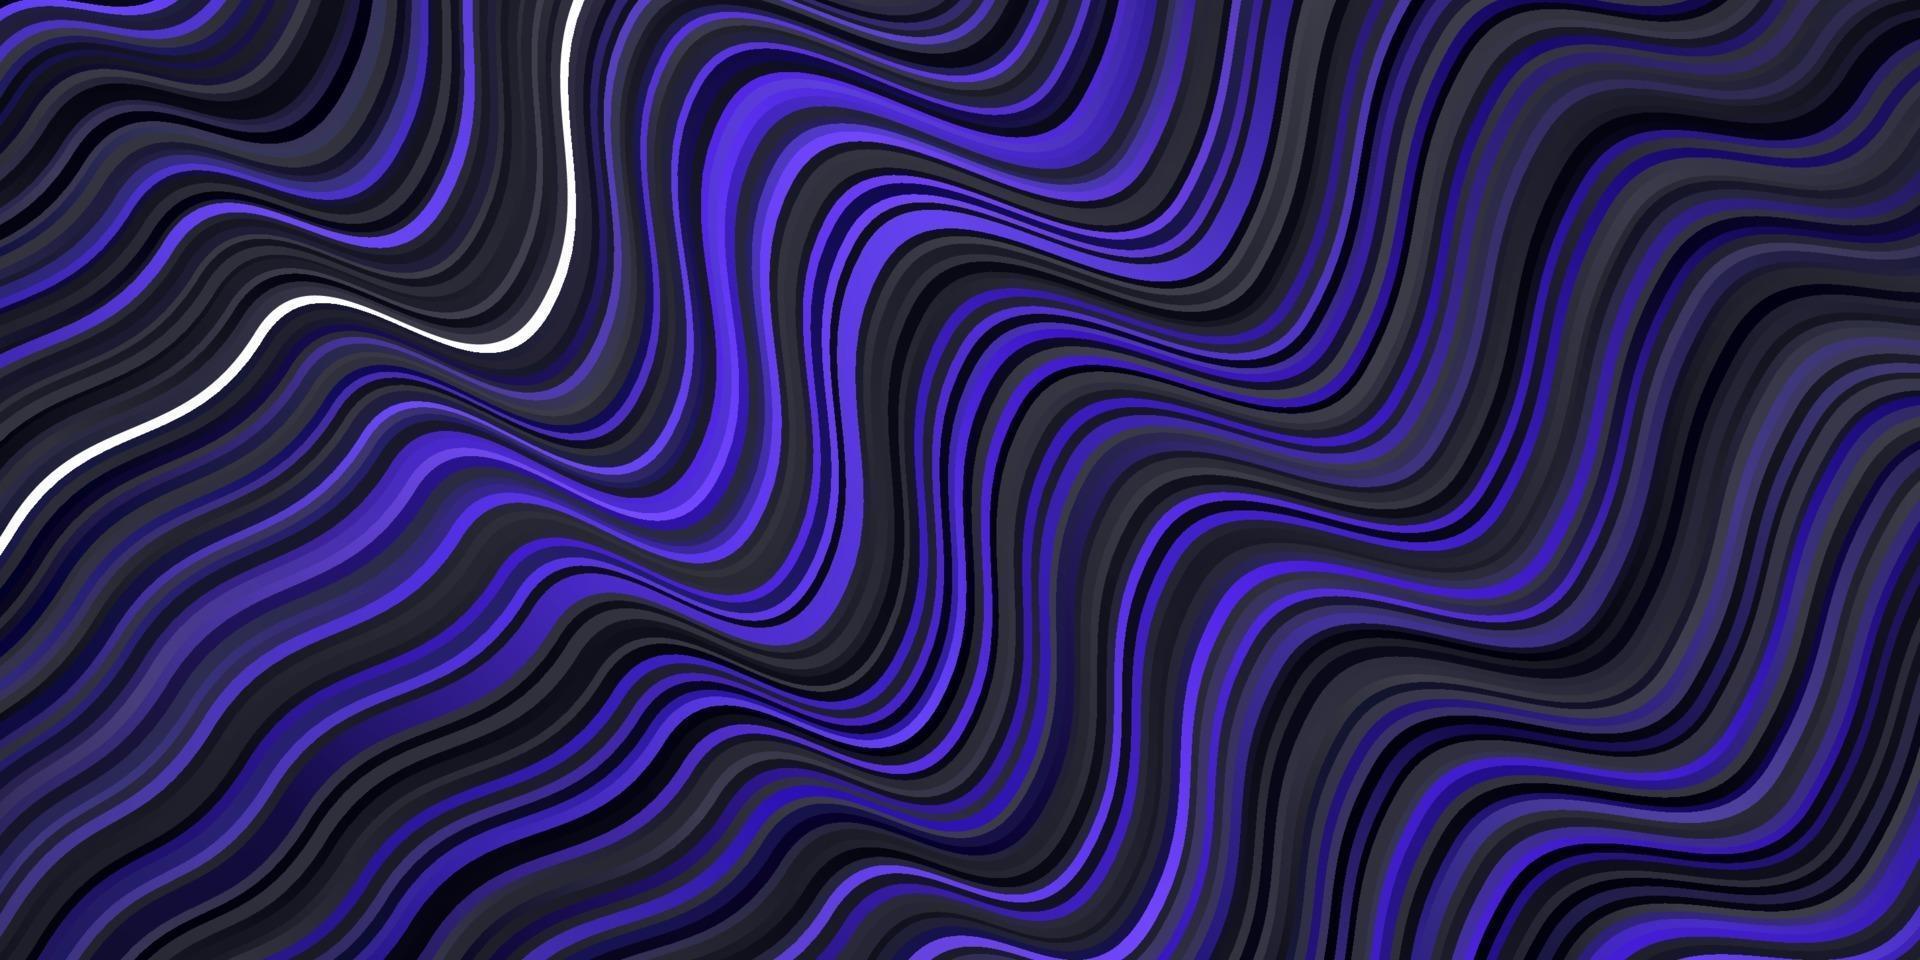 fundo vector roxo escuro com linhas curvas.